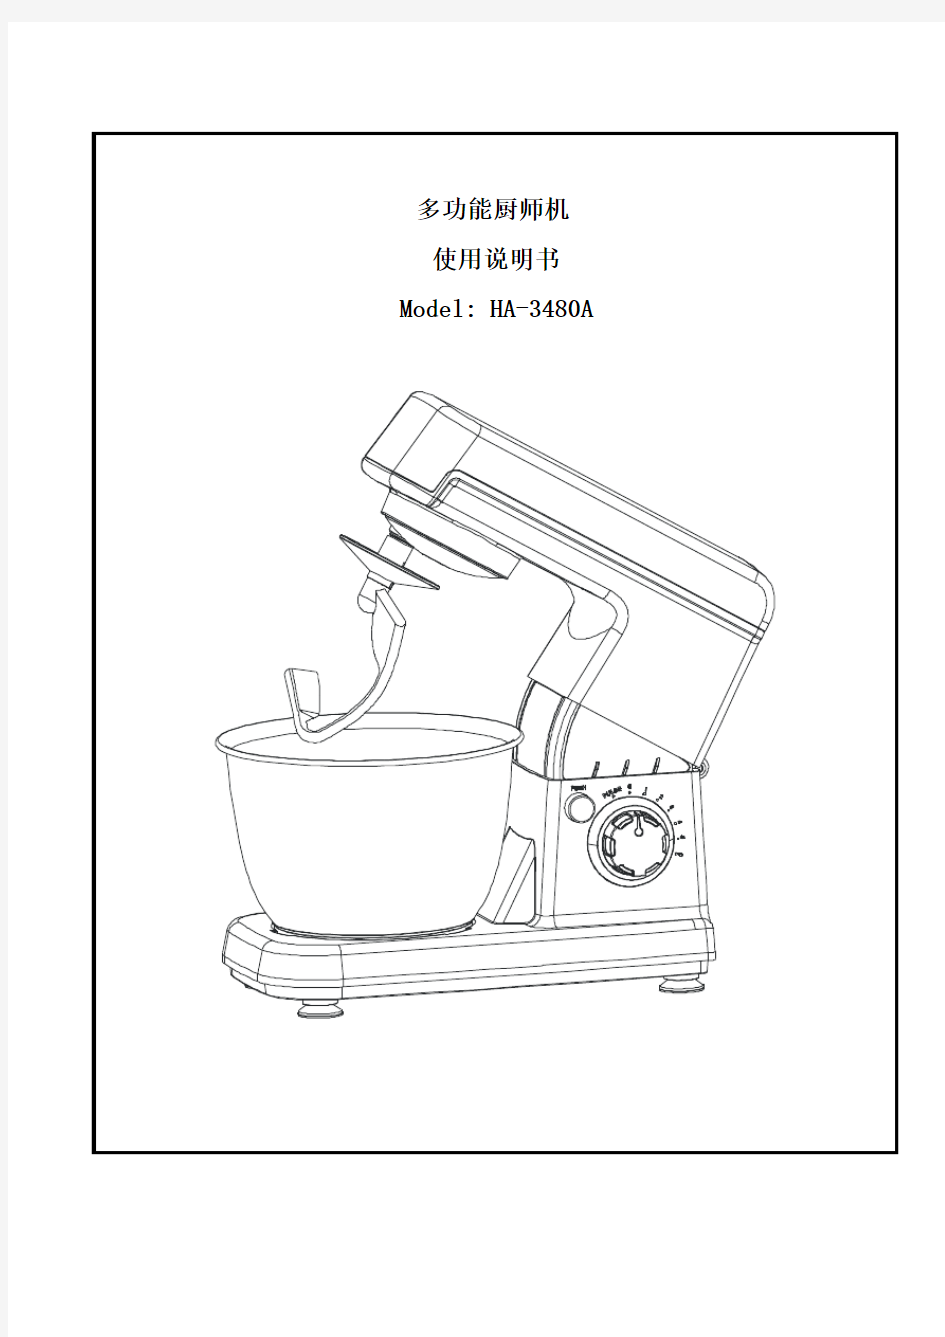 HA-3480A多功能厨师机使用说明书(附推荐食谱)